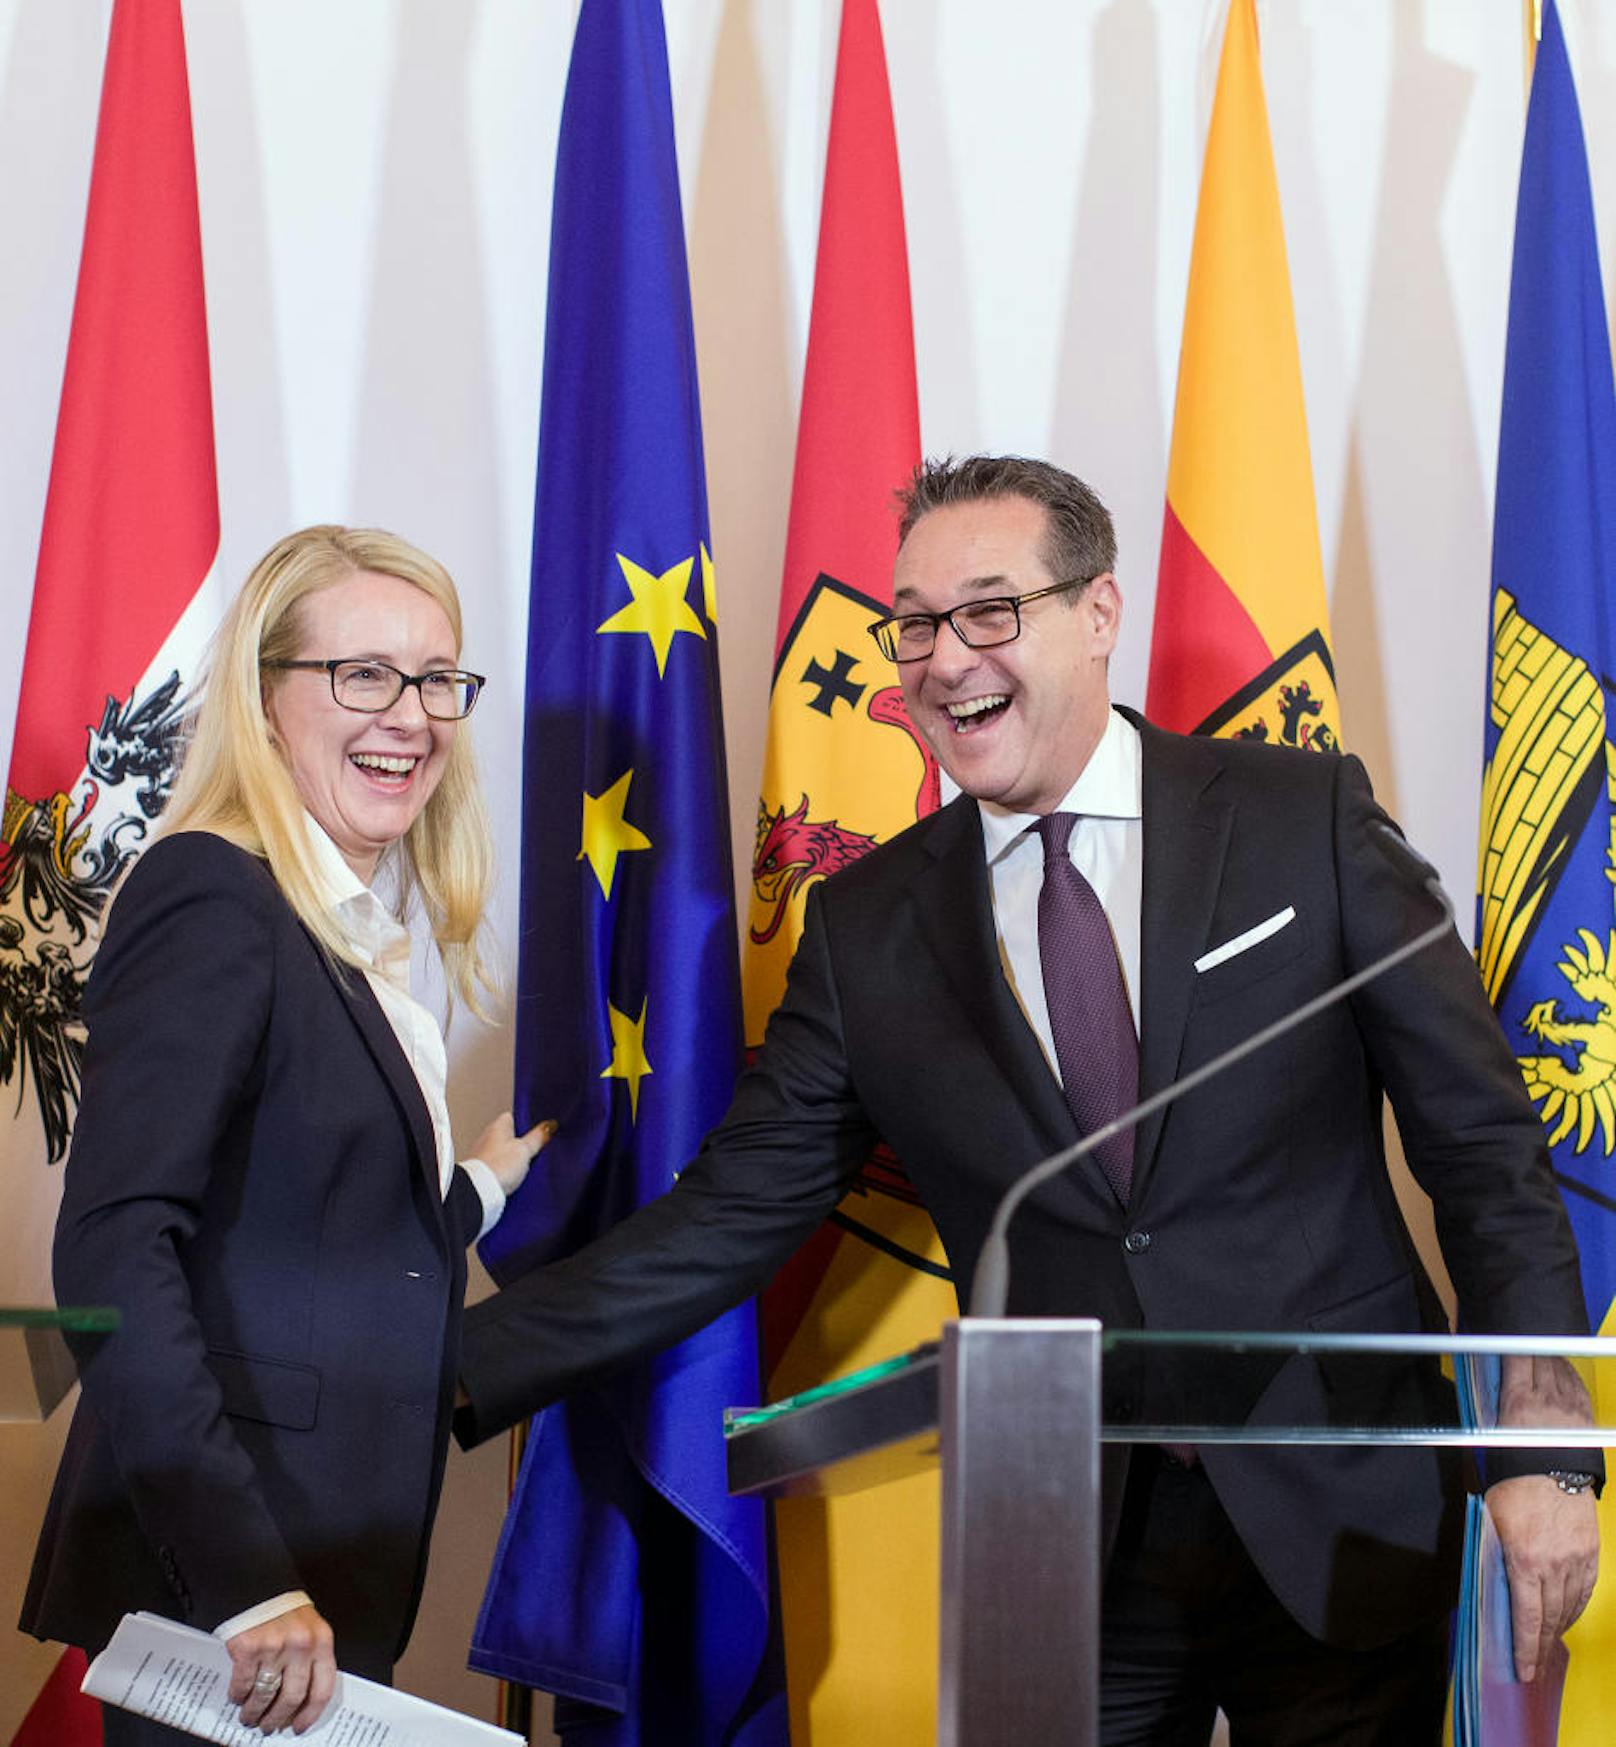 ÖVP-Wirtschaftsministerin Margarete Schramböck und Heinz-Christian Strache (FPÖ) richteten die umgefallene EU-Fahne gemeinsam wieder auf, nachdem sie ihn Mitte Jänner fast getroffen hatte. "Ich habe die EU gerettet", kommentierte Strache den Vorfall damals.